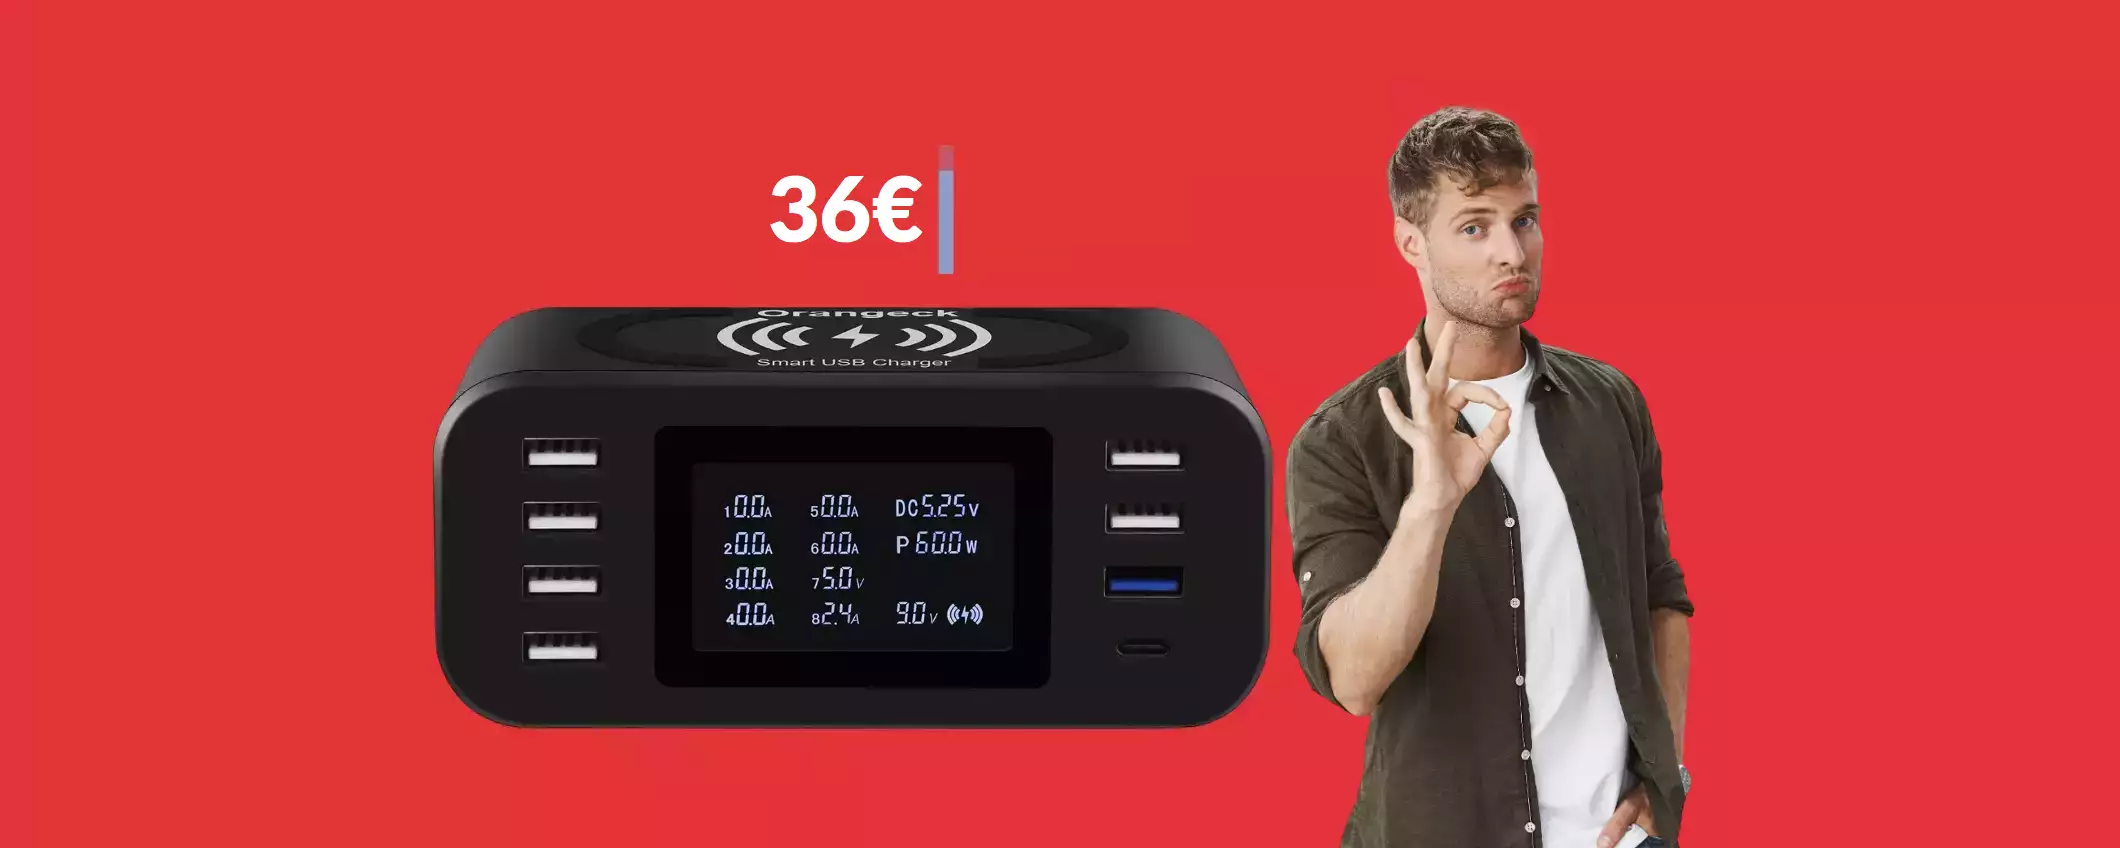 Stazione di ricarica multiporta con basetta wireless: 36€ col coupon